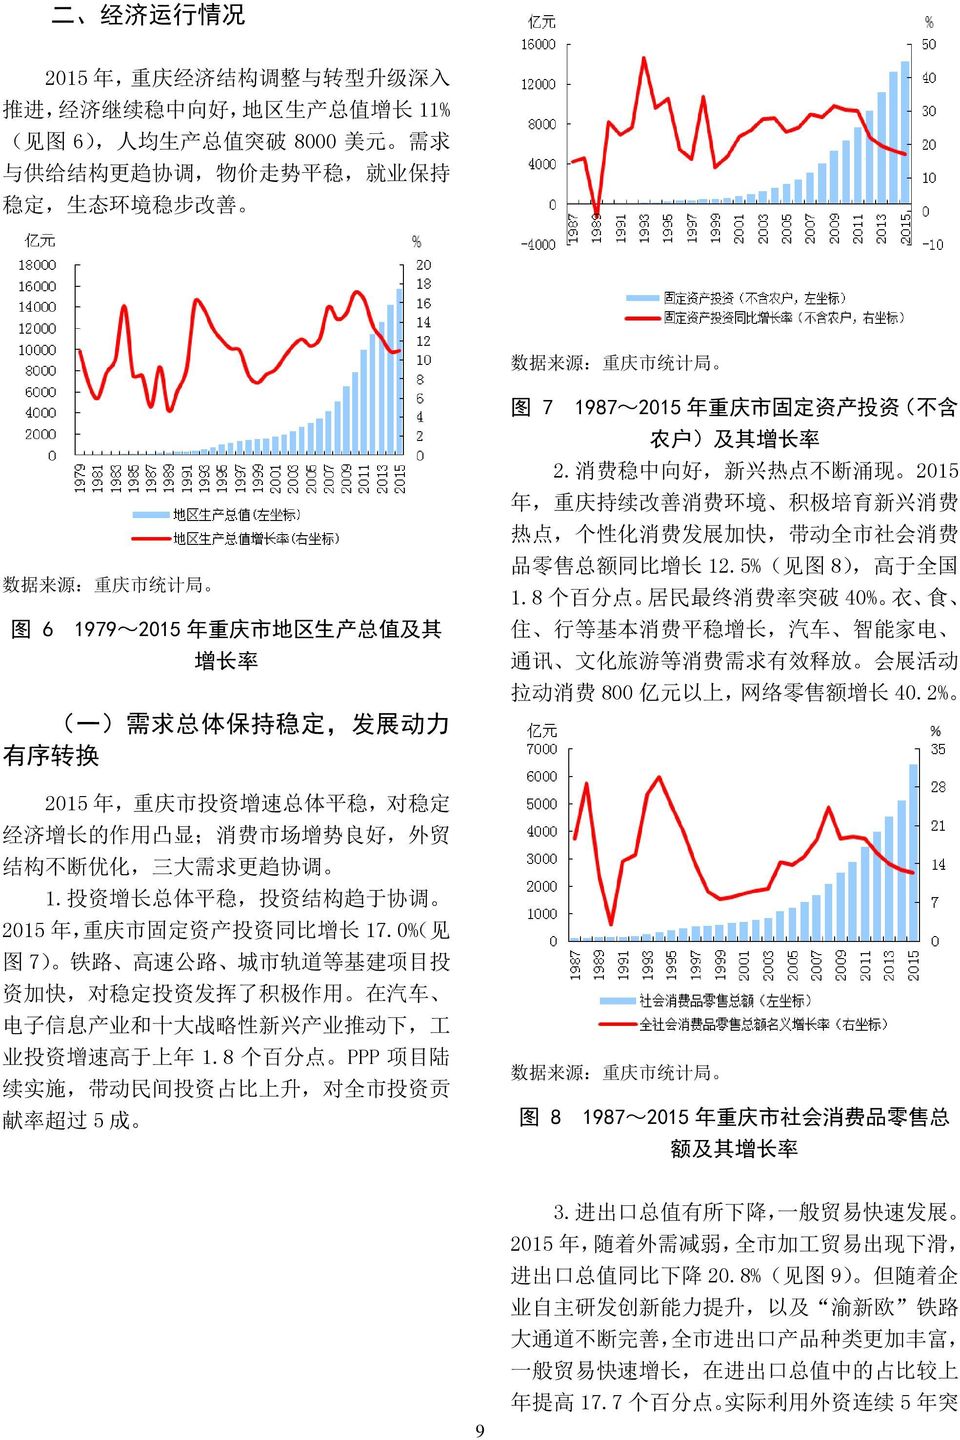 投 资 增 长 总 体 平 稳, 投 资 结 构 趋 于 协 调 2015 年, 重 庆 市 固 定 资 产 投 资 同 比 增 长 17.